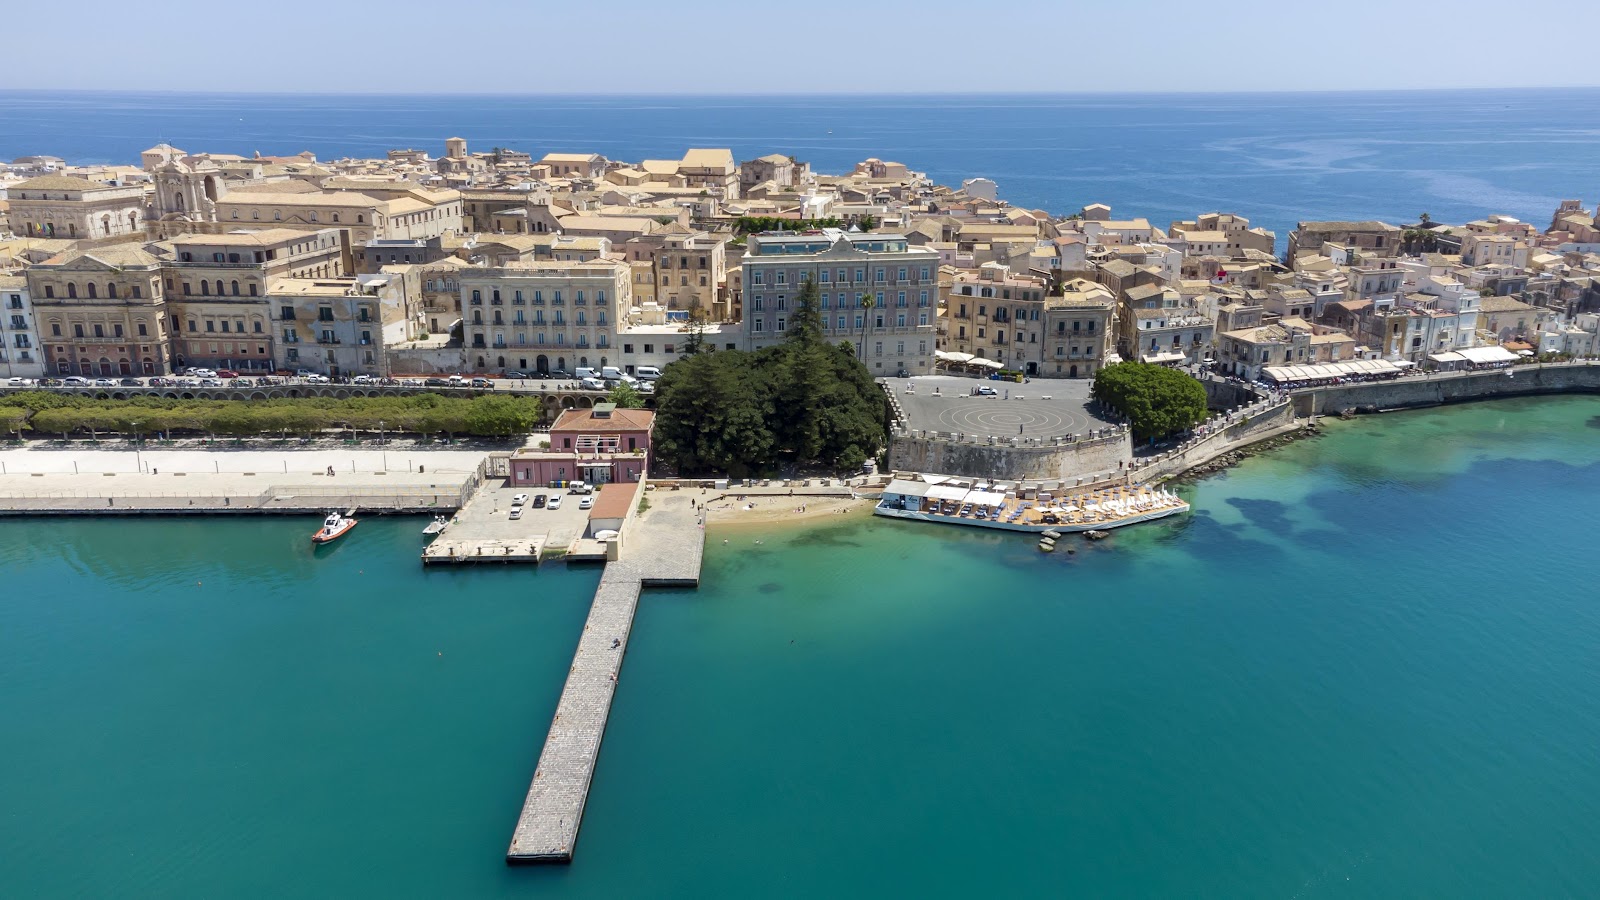 Photo of Spiaggetta della Marina in Ortigia and the settlement